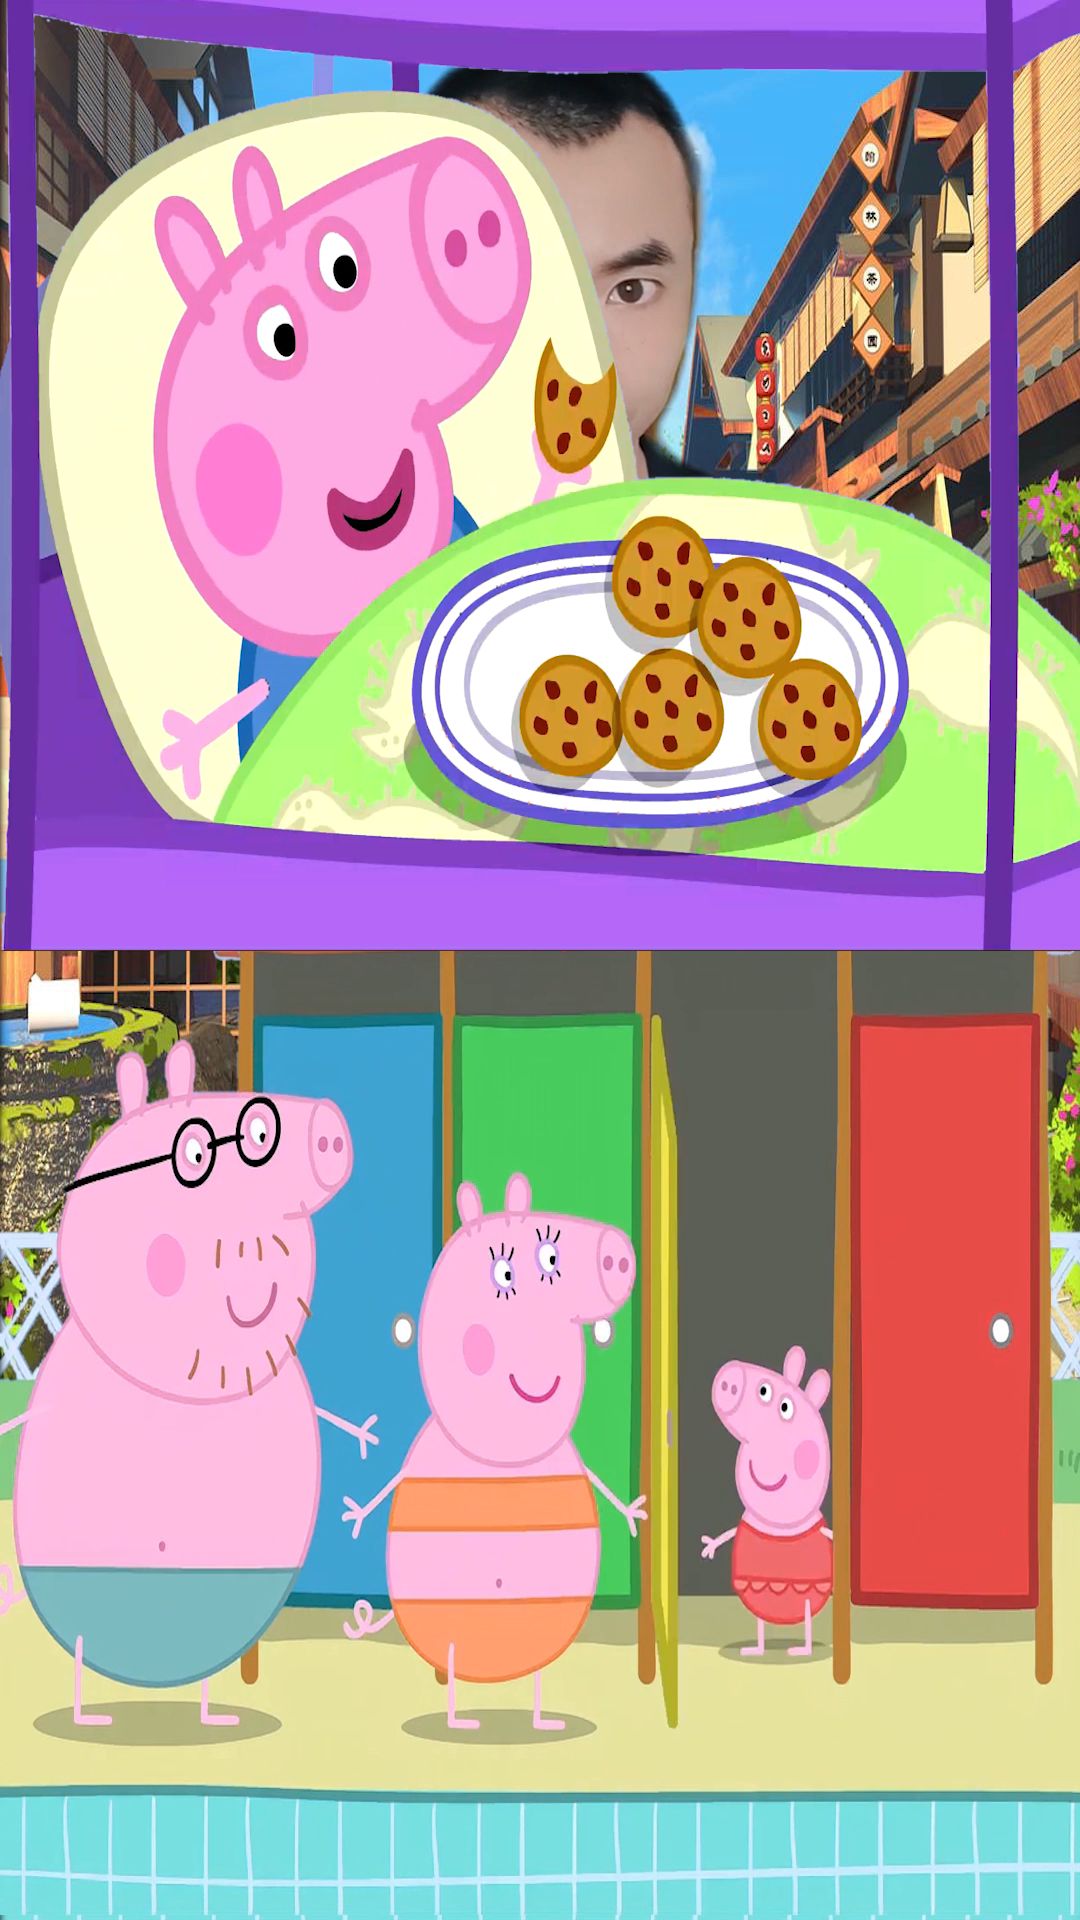 小猪佩奇 第四季-高清全集在线观看和下载-少儿动漫卡通-华数TV全网影视